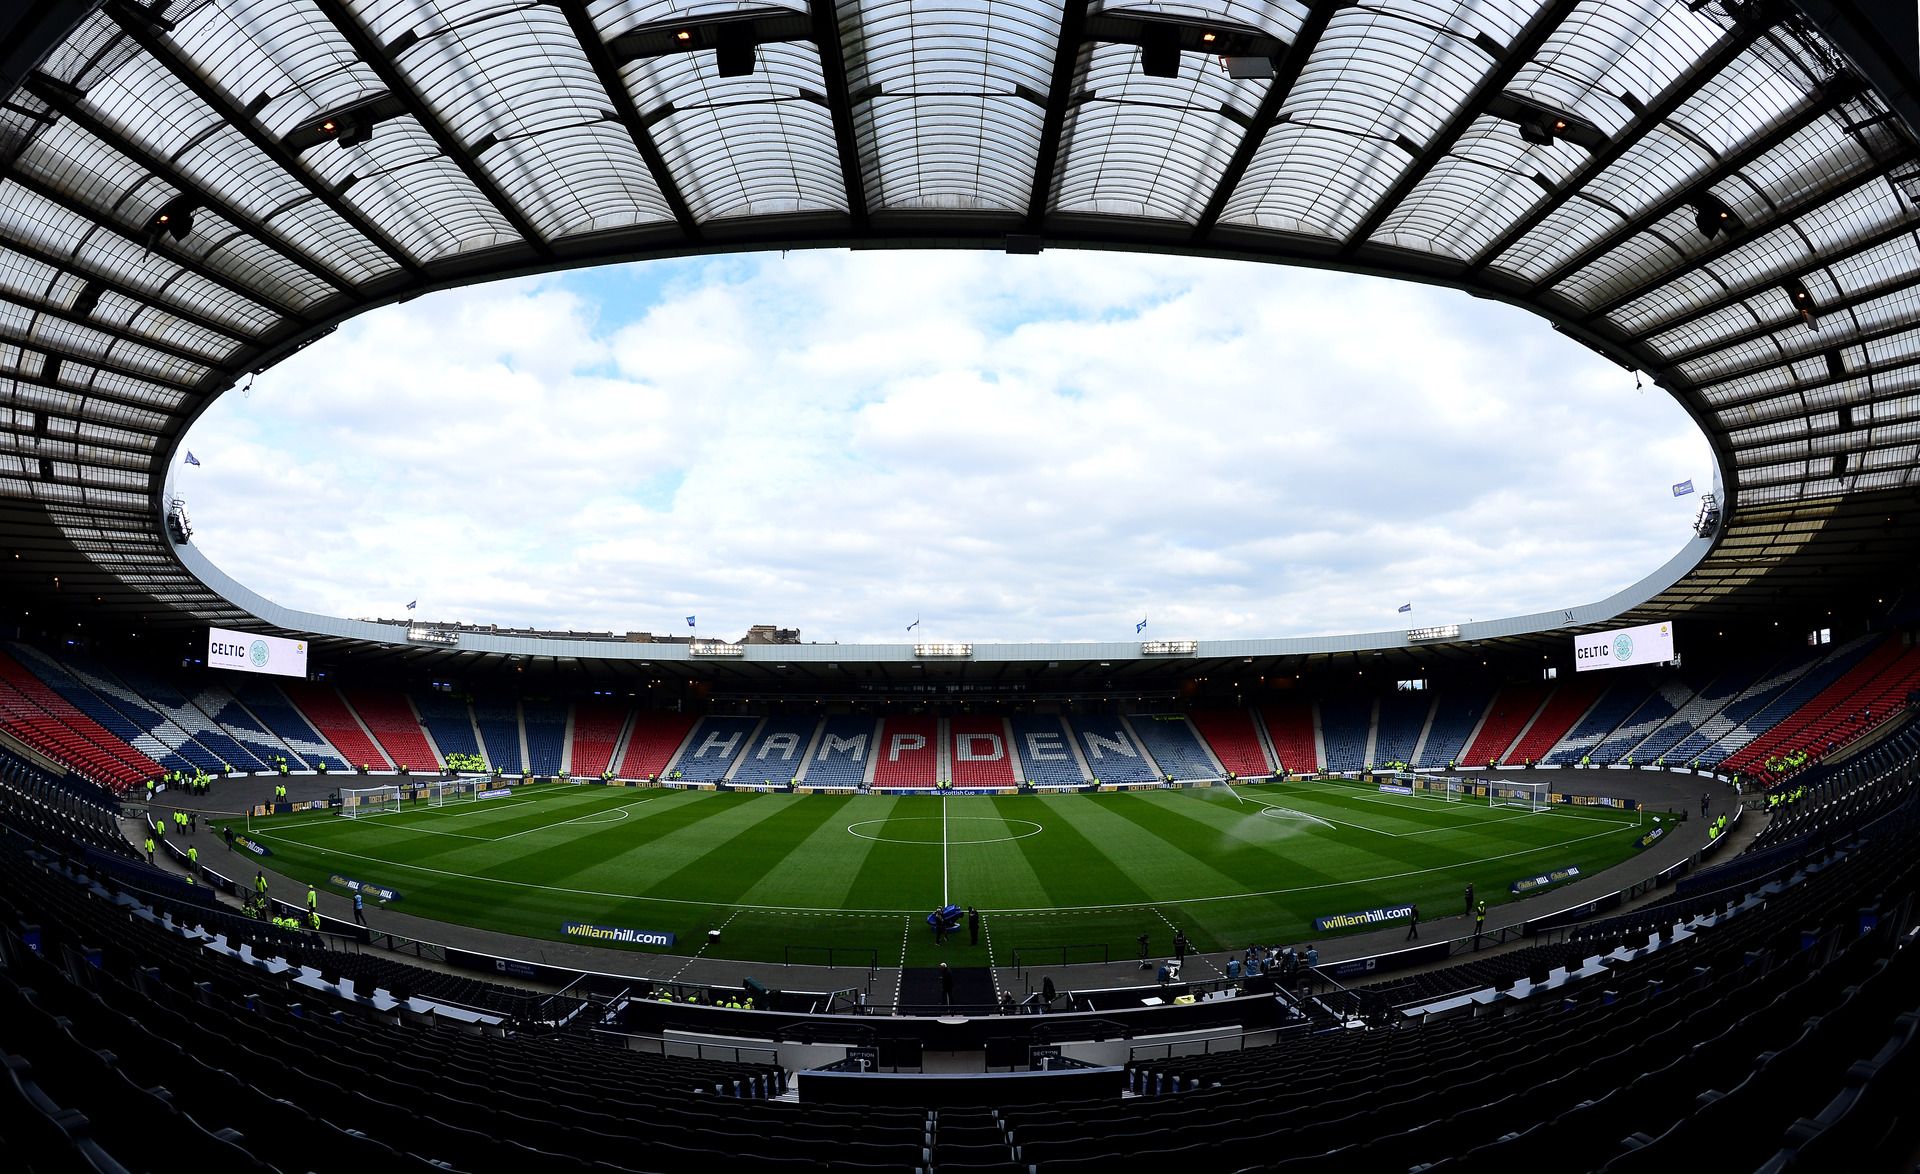 Един от храмовете на футбола - "Хемпдън Парк" в Глазгоу, ще е домакин на мачовете от група D: Шотландия - Чехия, Шотландия - Хърватия и Чехия - Хърватия.